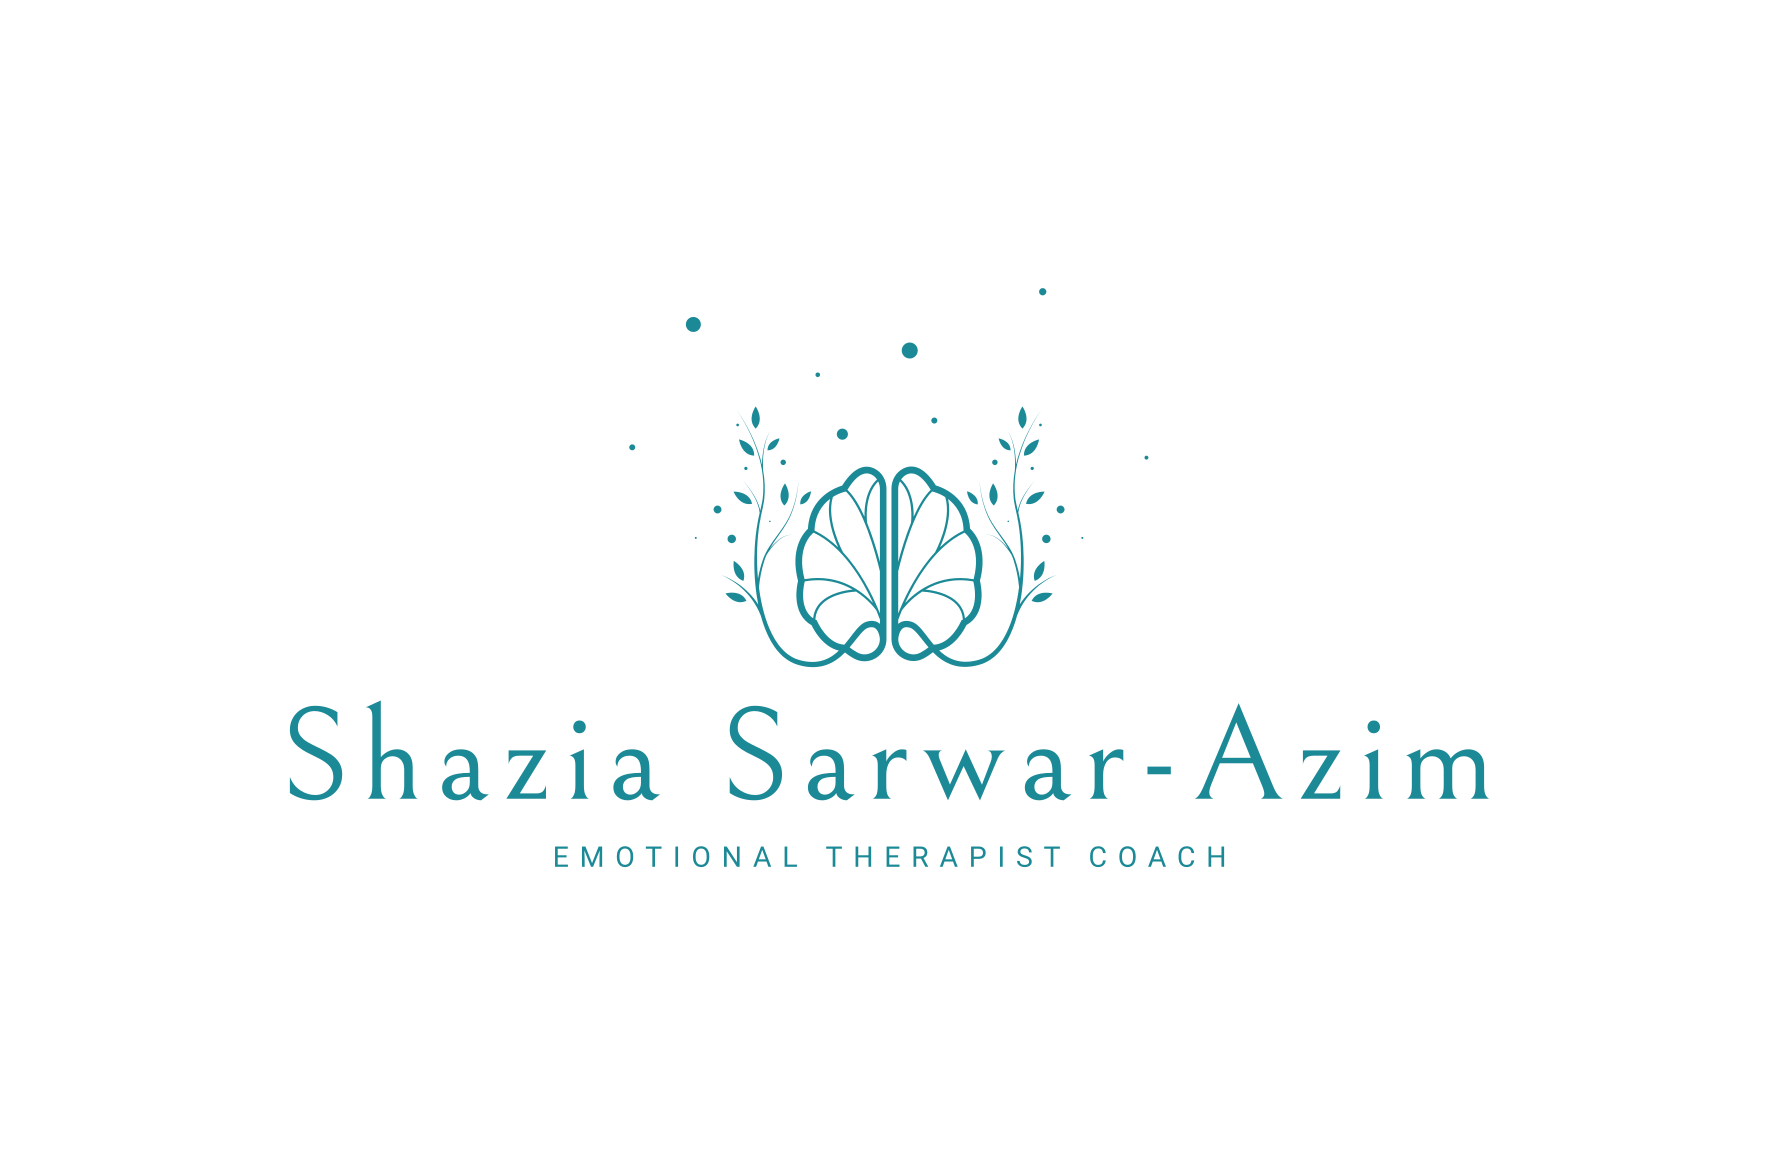 Shazia Sarwar-azim - Emotional Therapist Coach - Brave Butterfly Publishers logo